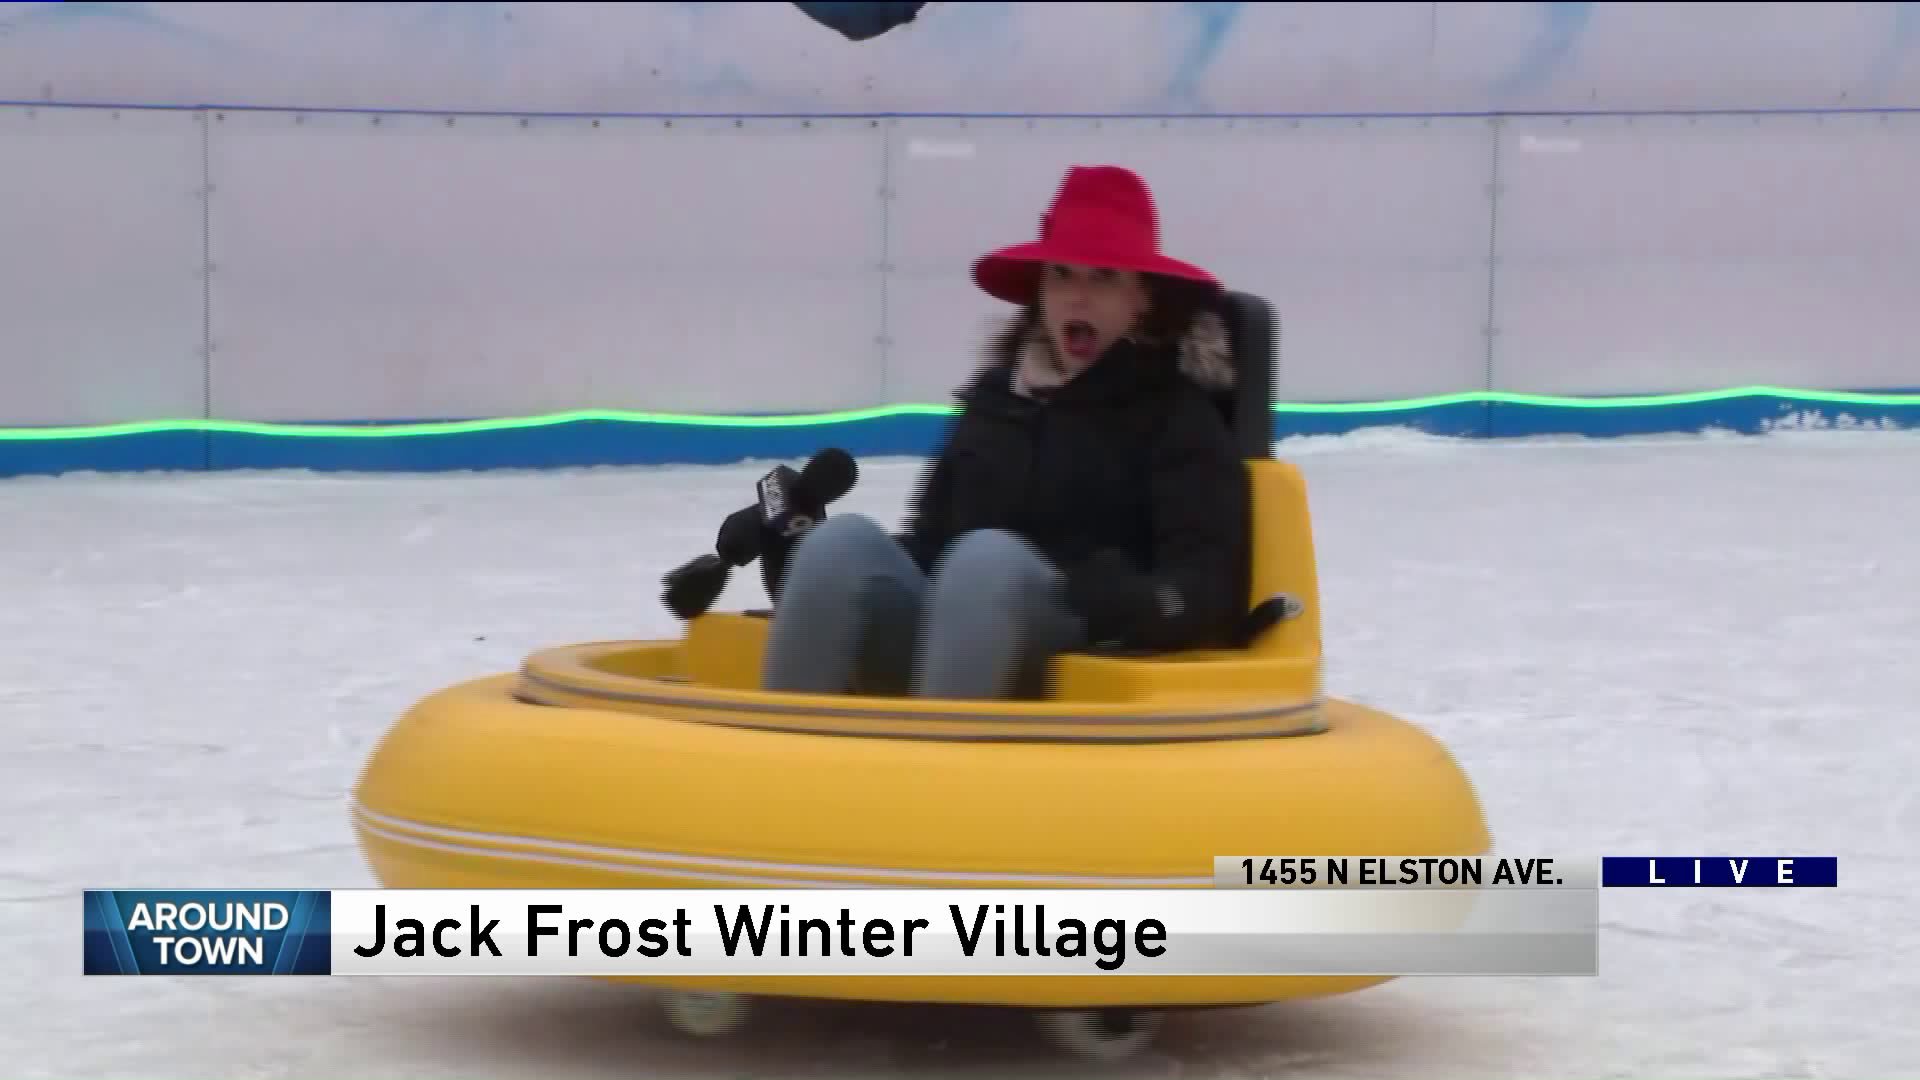 Around Town explores Jack Frost Winter Village